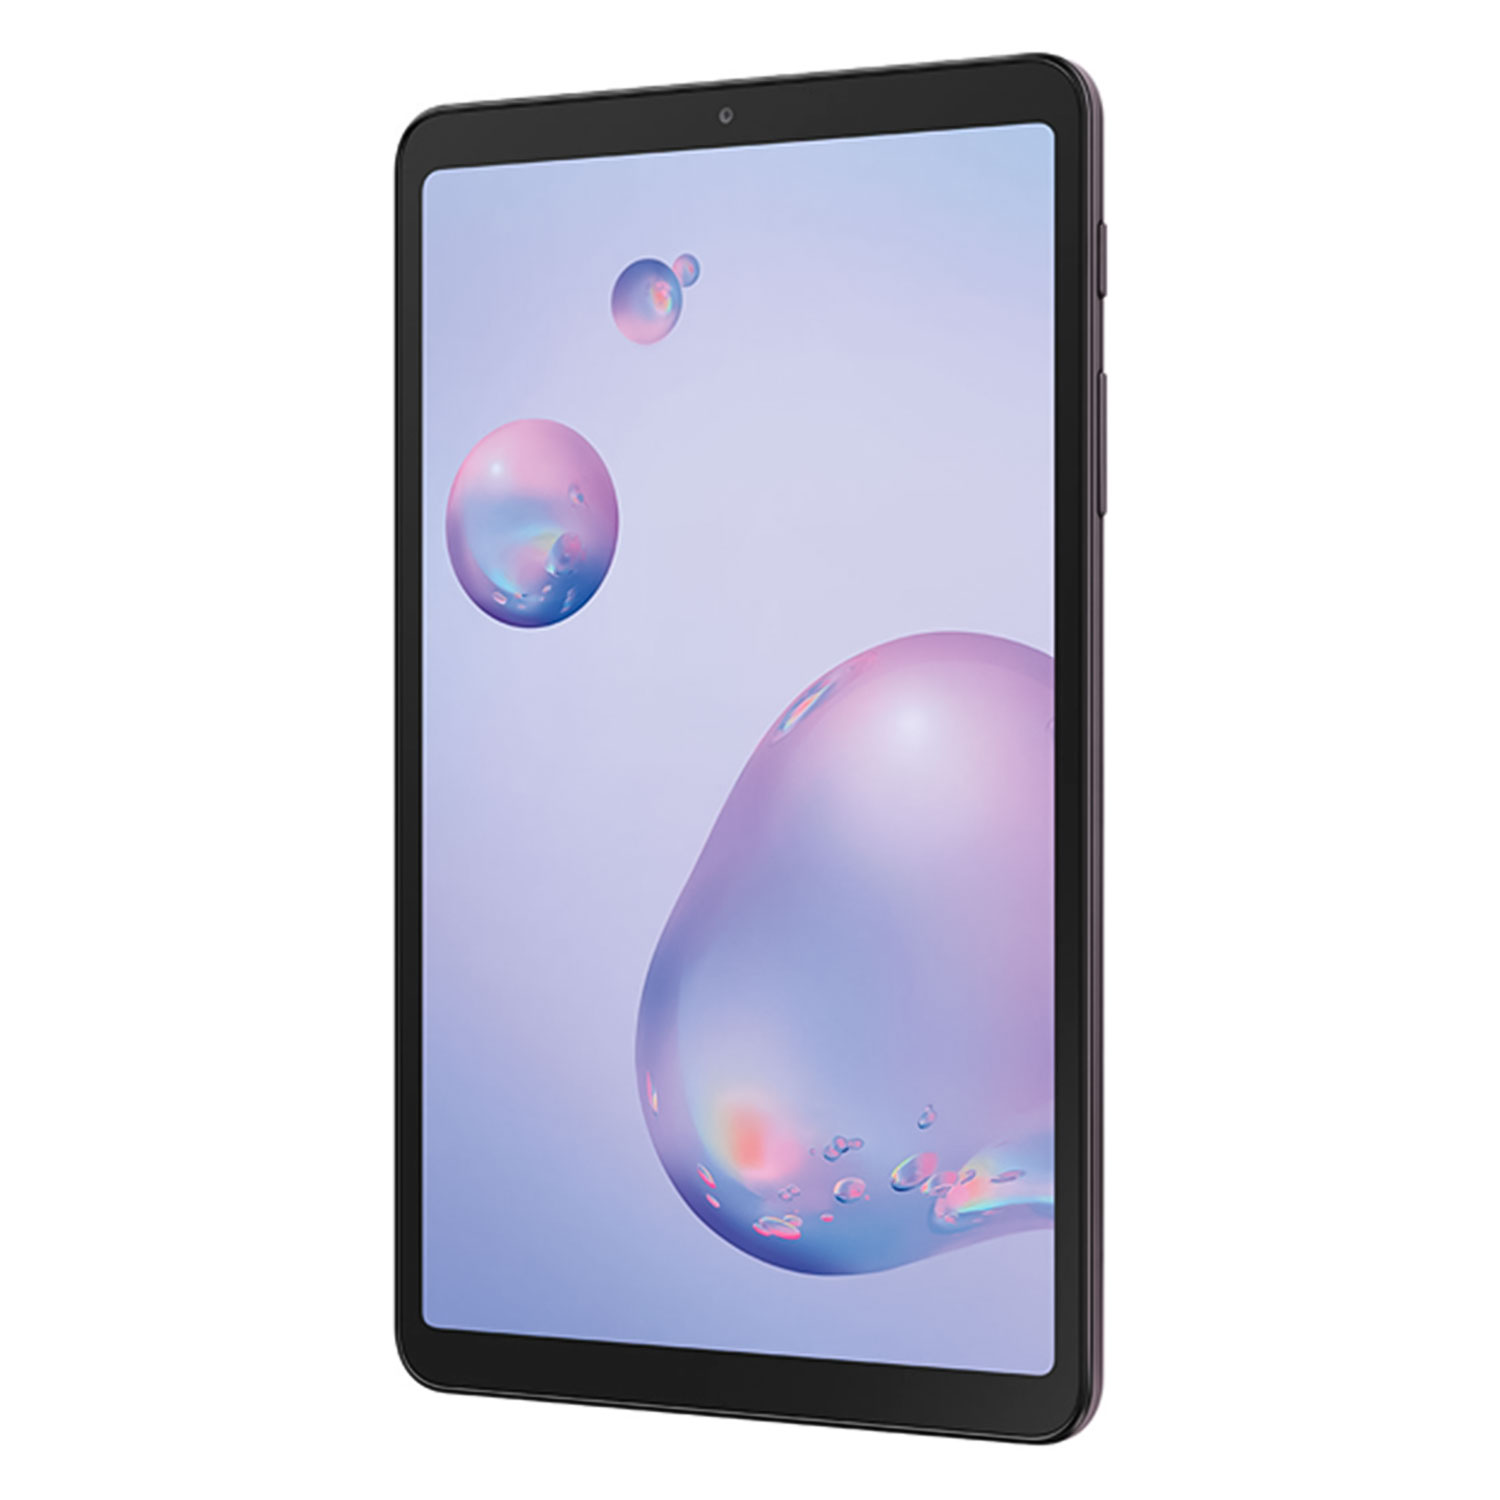 Tablet Samsung Galaxy Tab A SM-T307U Tela 8.4" Wi-Fi 32GB 3GB RAM - Mocha